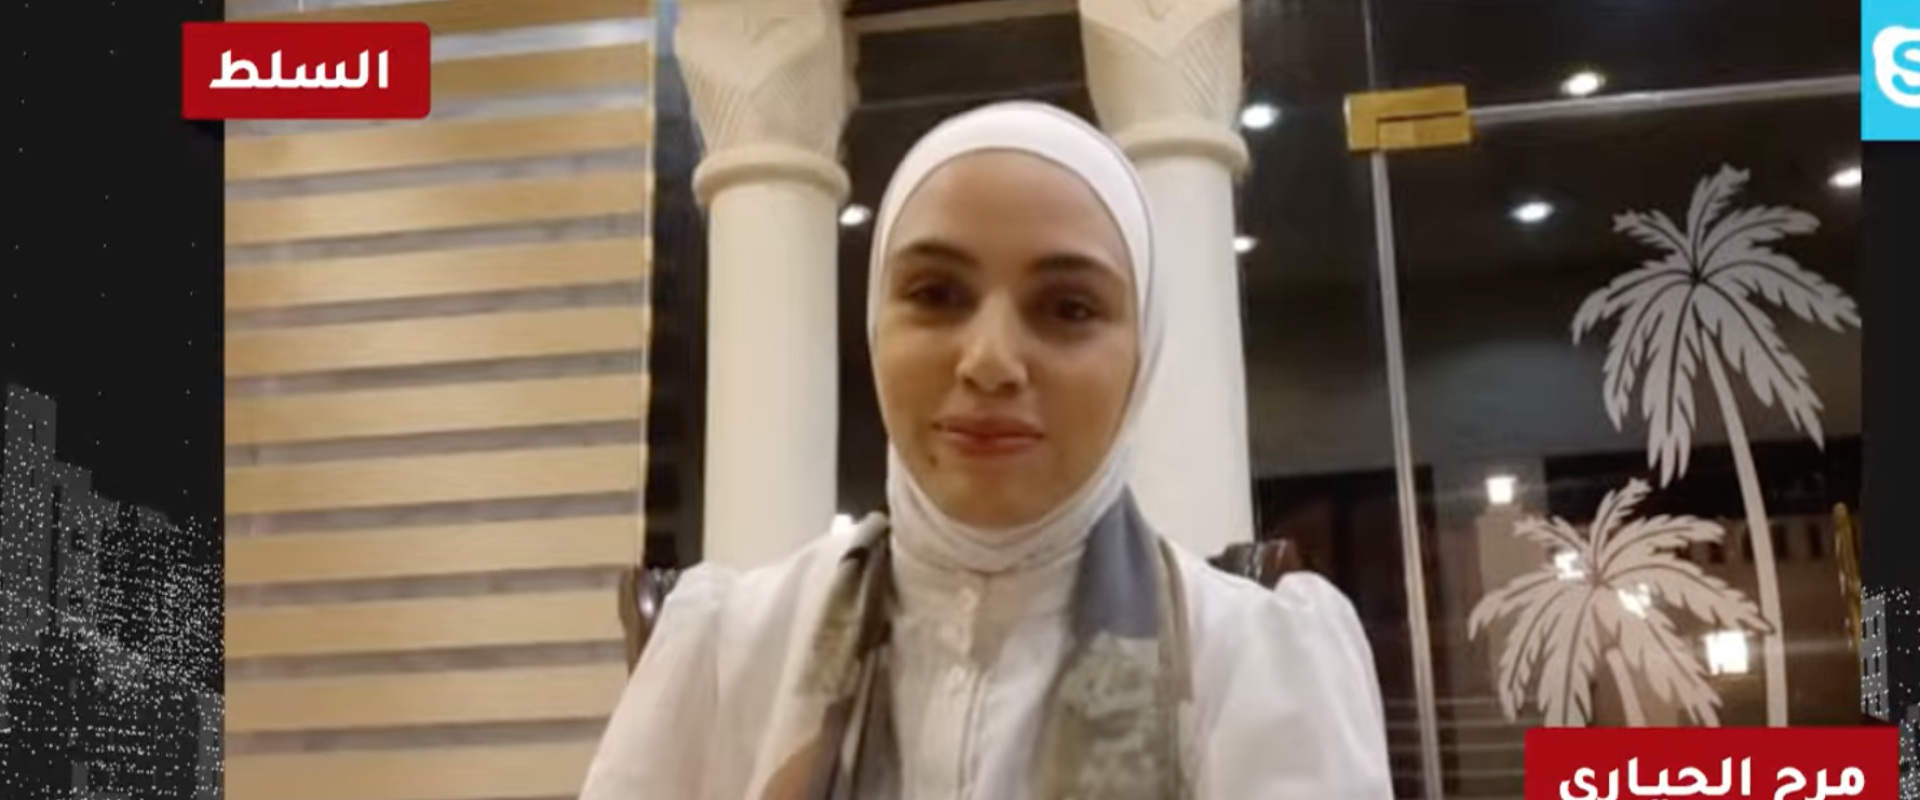 الدكتورة مرح الحياري، الطبيبة المقيمة في مستشفى السلط الحكومي الذي حدثت فيه الكارثة